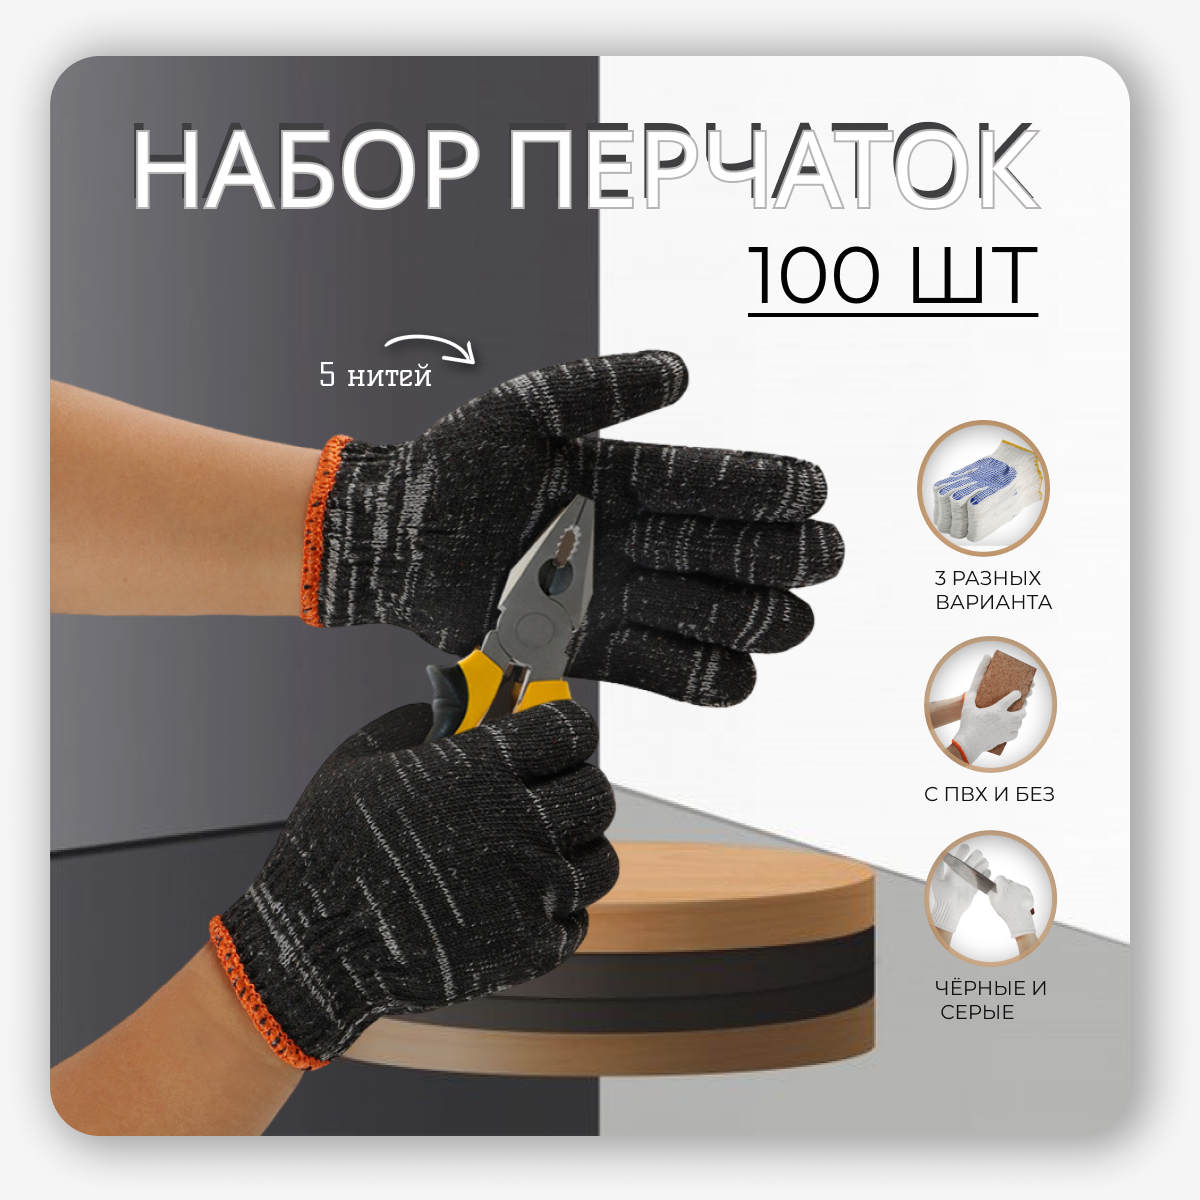 Многоразовые перчатки с ПВХ черные хозяйственные промышленные рабочие дышащие садовые, 100 шт